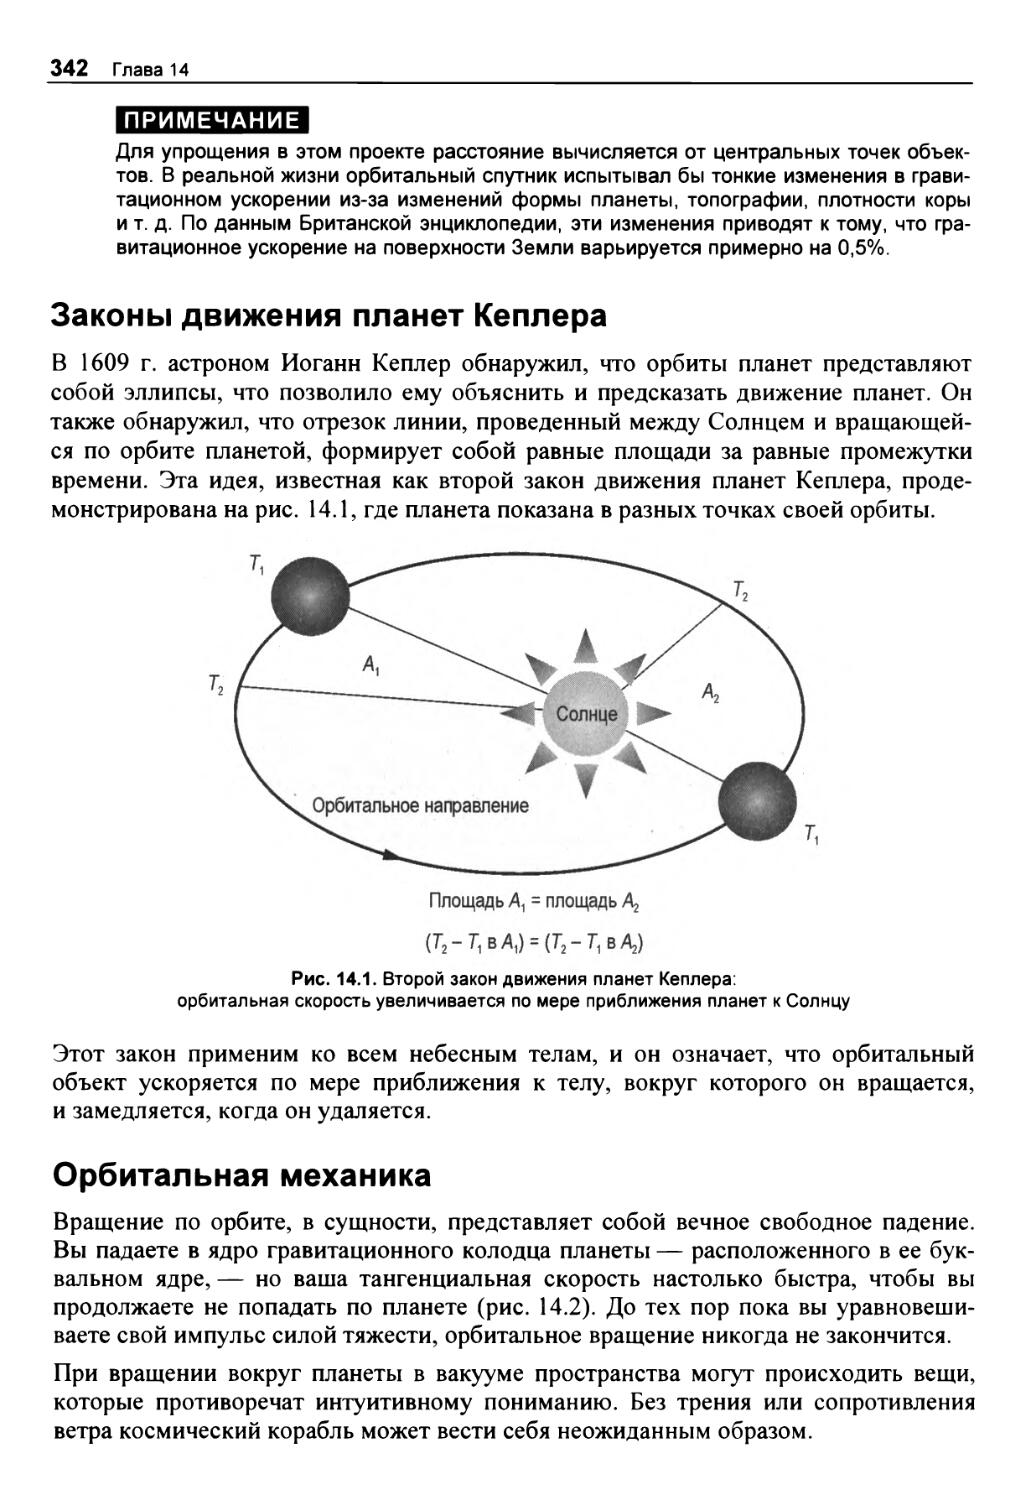 Законы движения планет Кеплера
Орбитальная механика